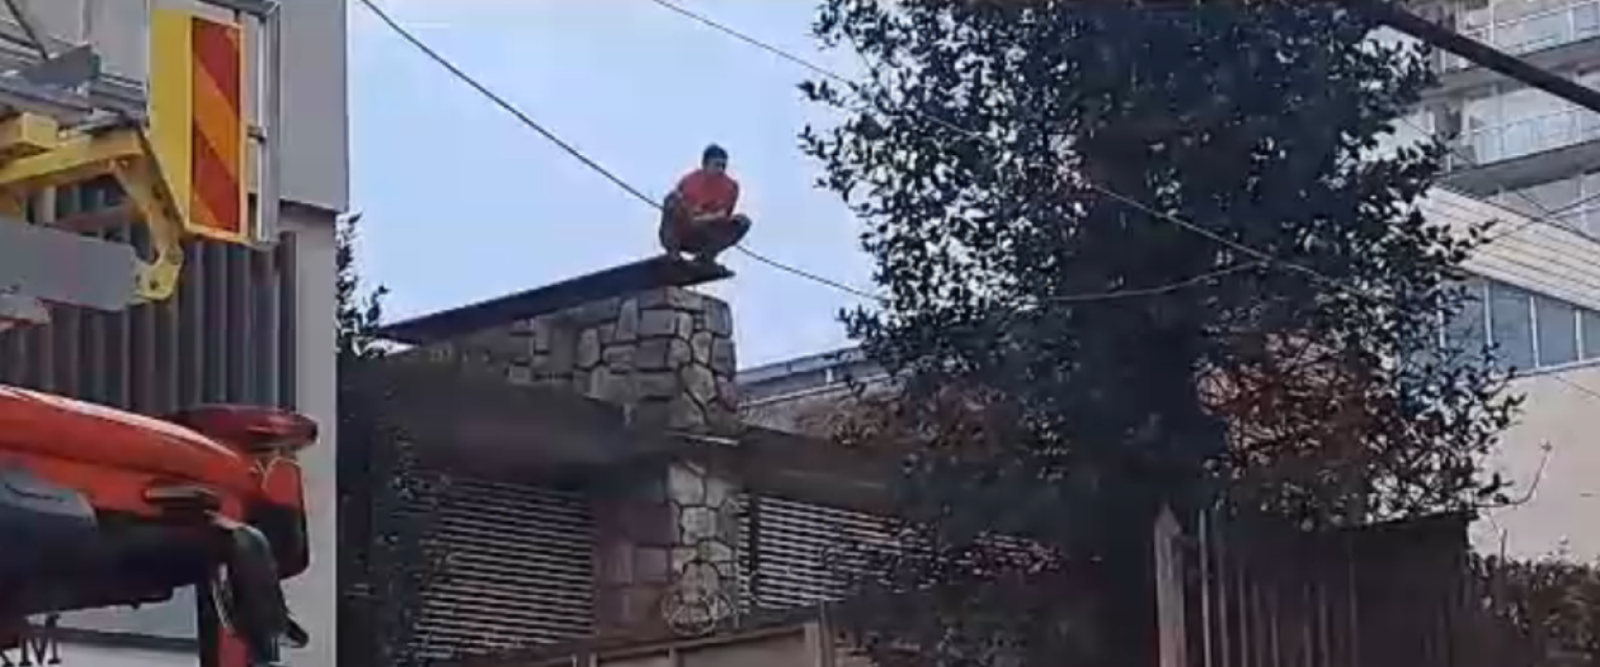 Imputado intenta huir y se lanza desde techo de Hospital de Temuco